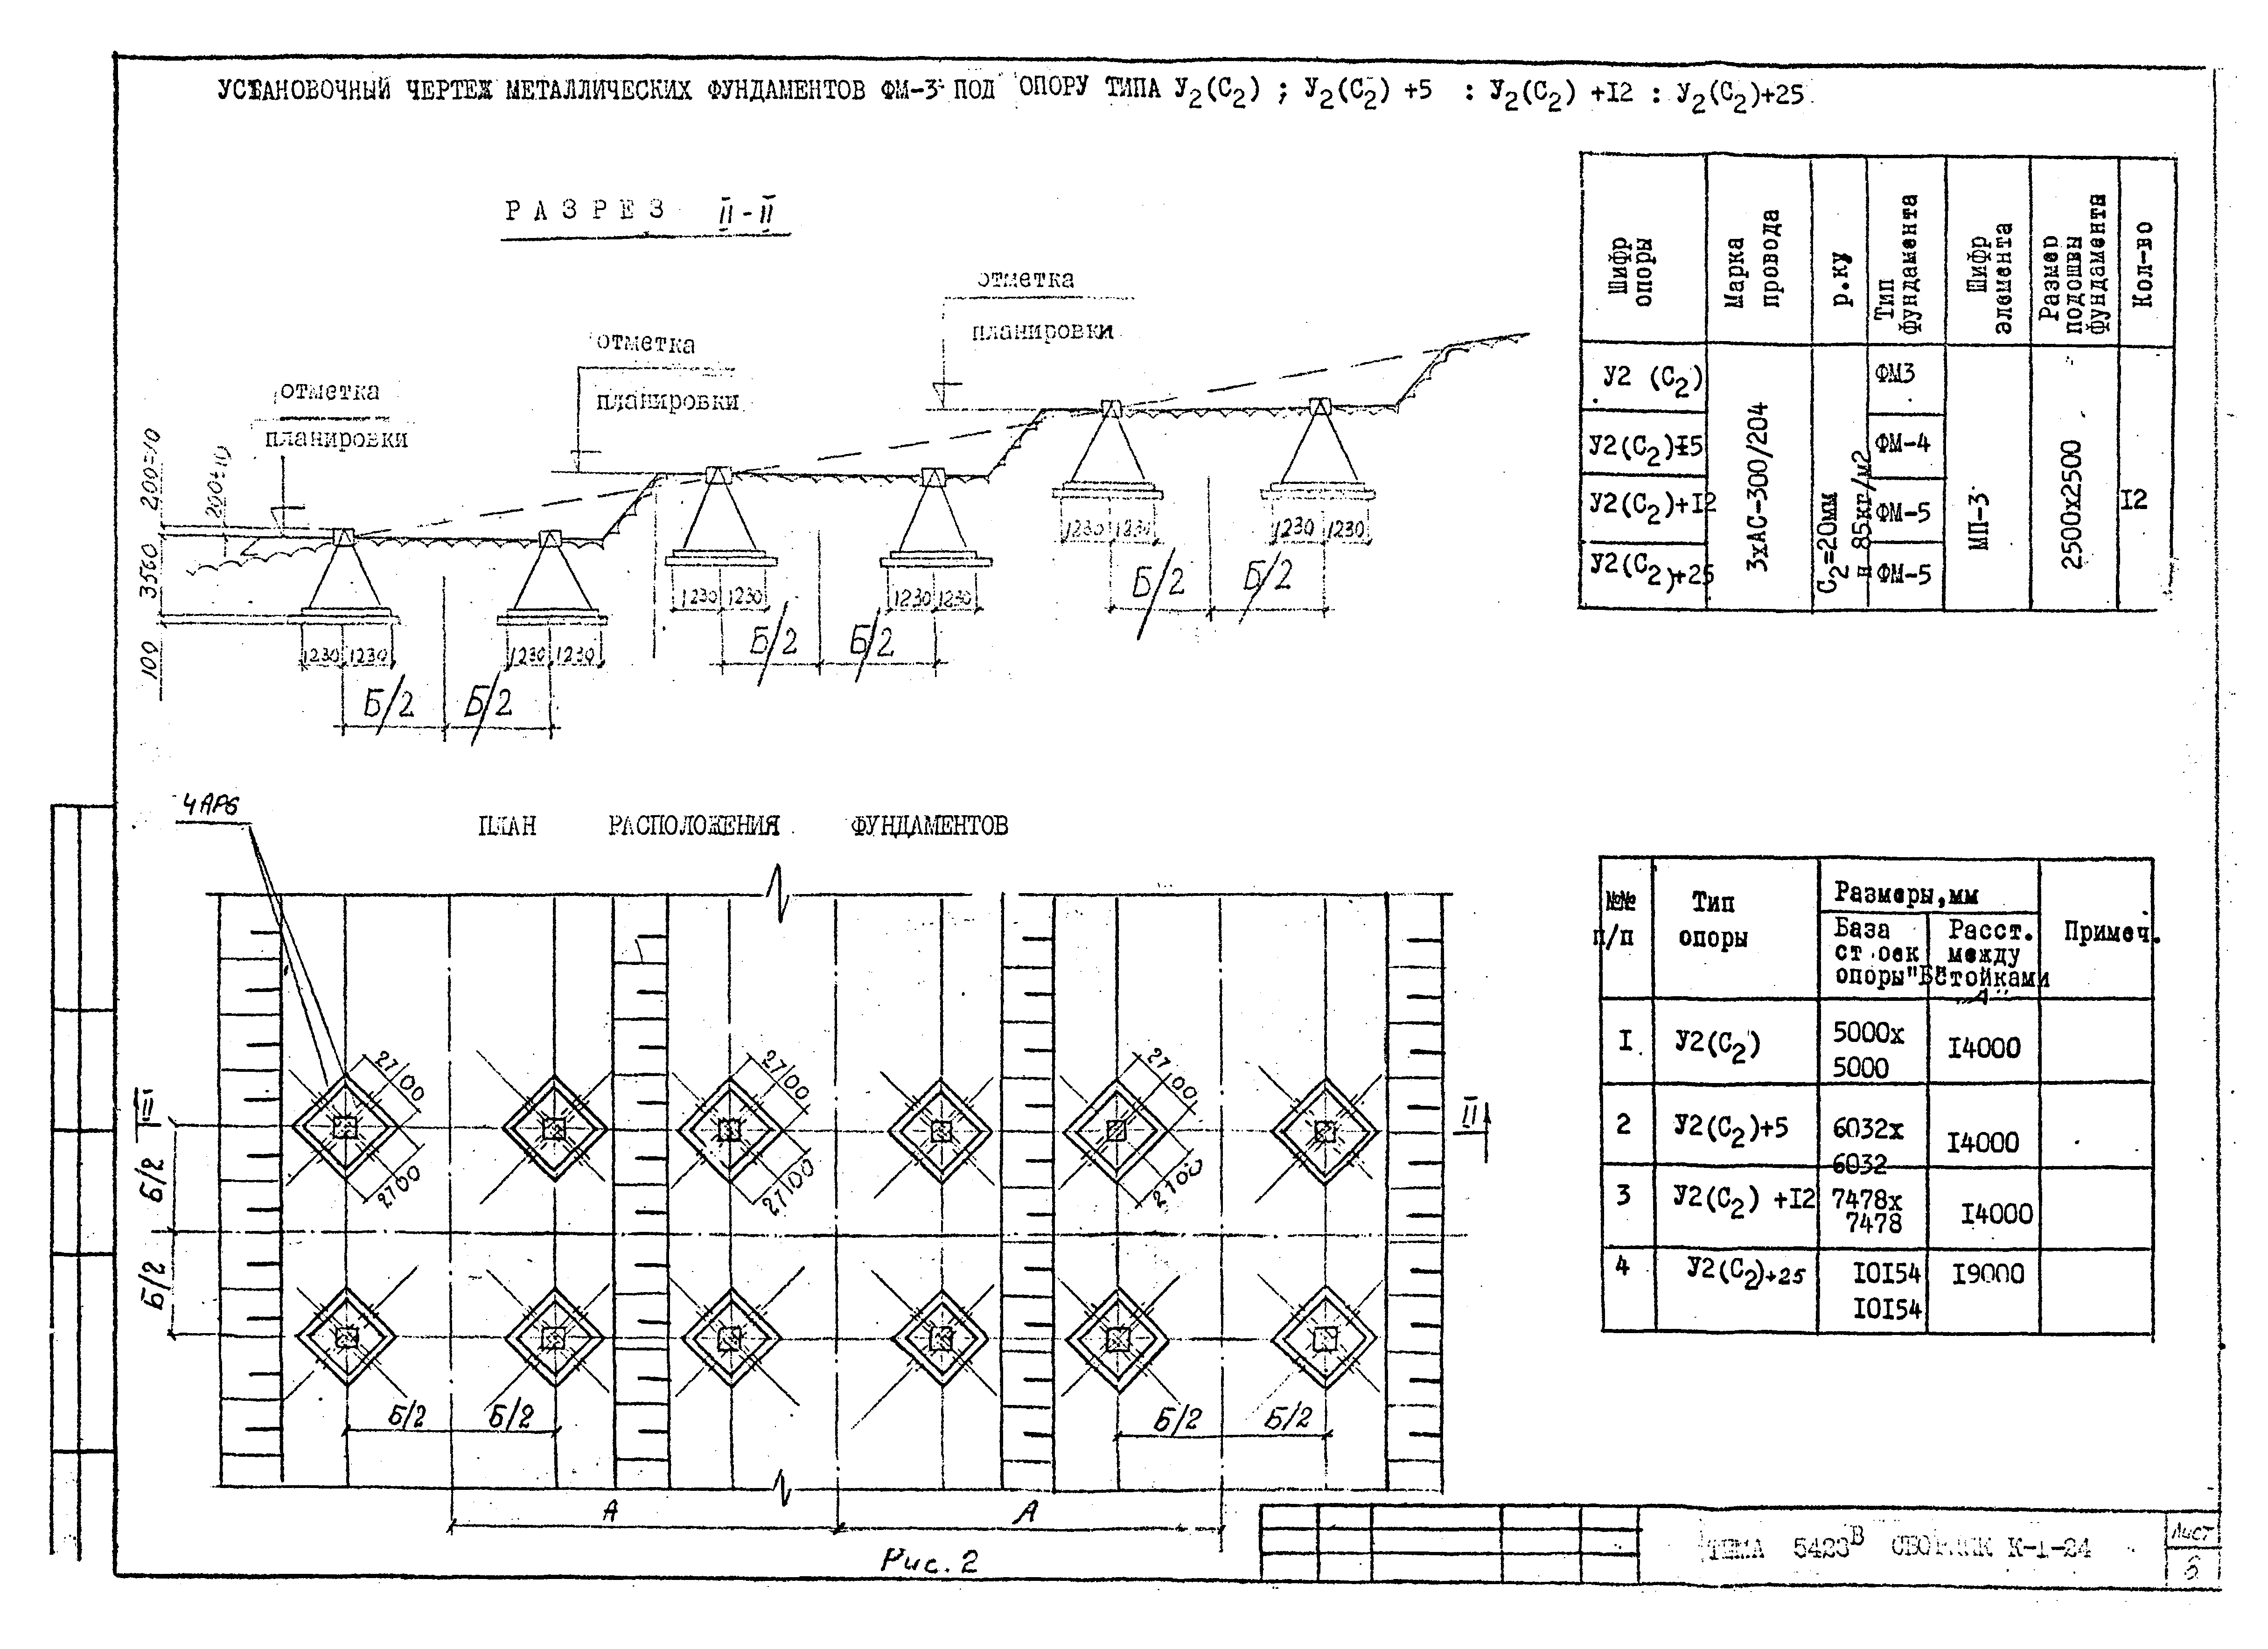 Технологическая карта К-1-24-5